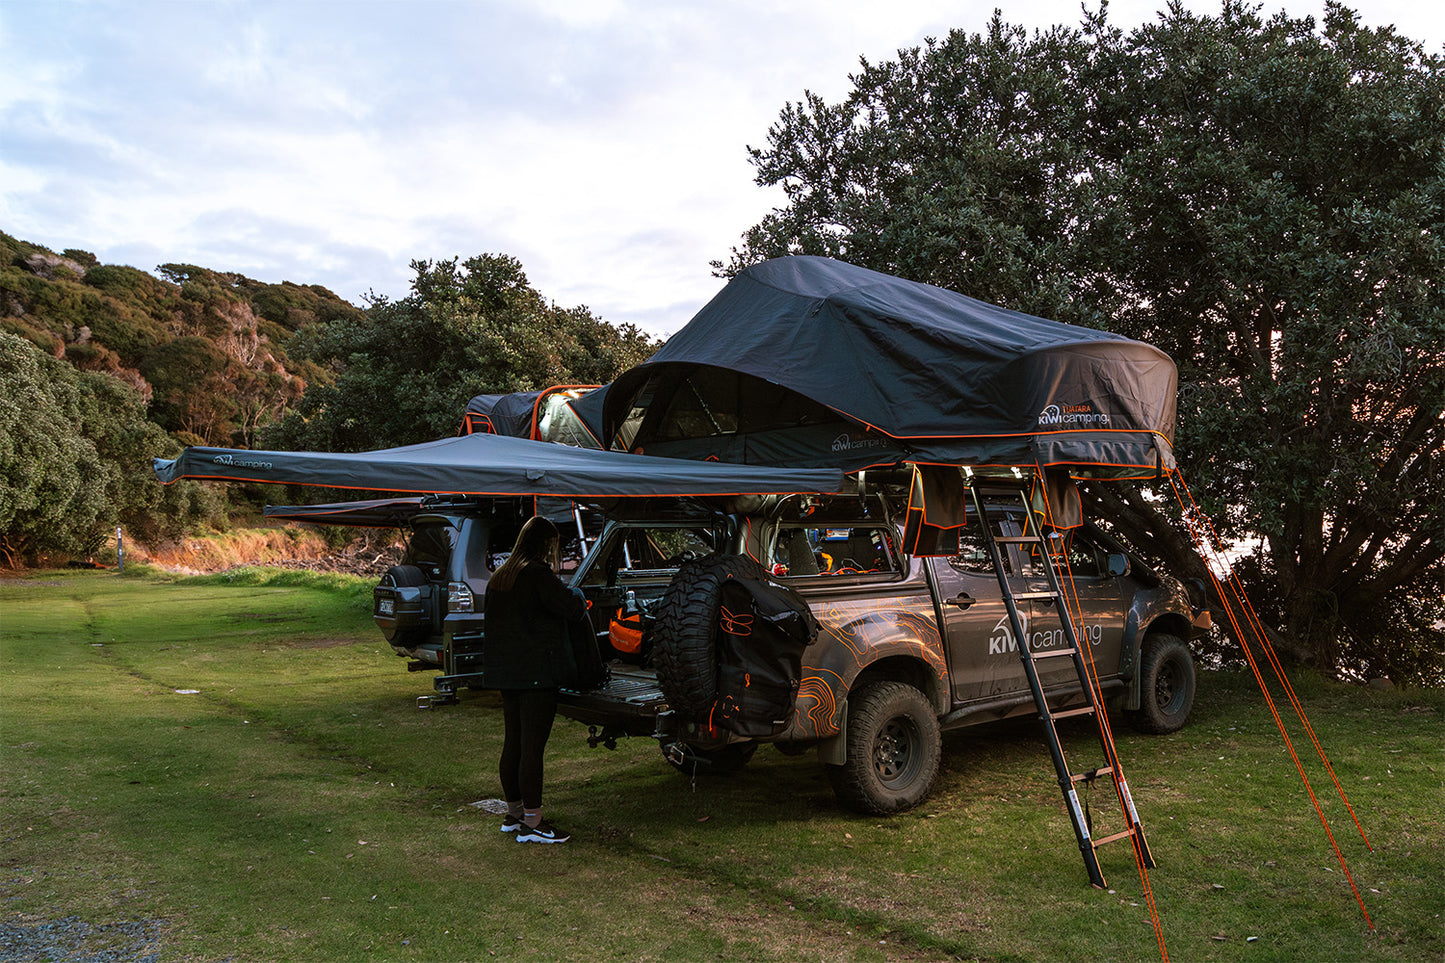 Kiwi Camping Tuatara 270-Degree Self-Supporting Awning LH/Passanger side